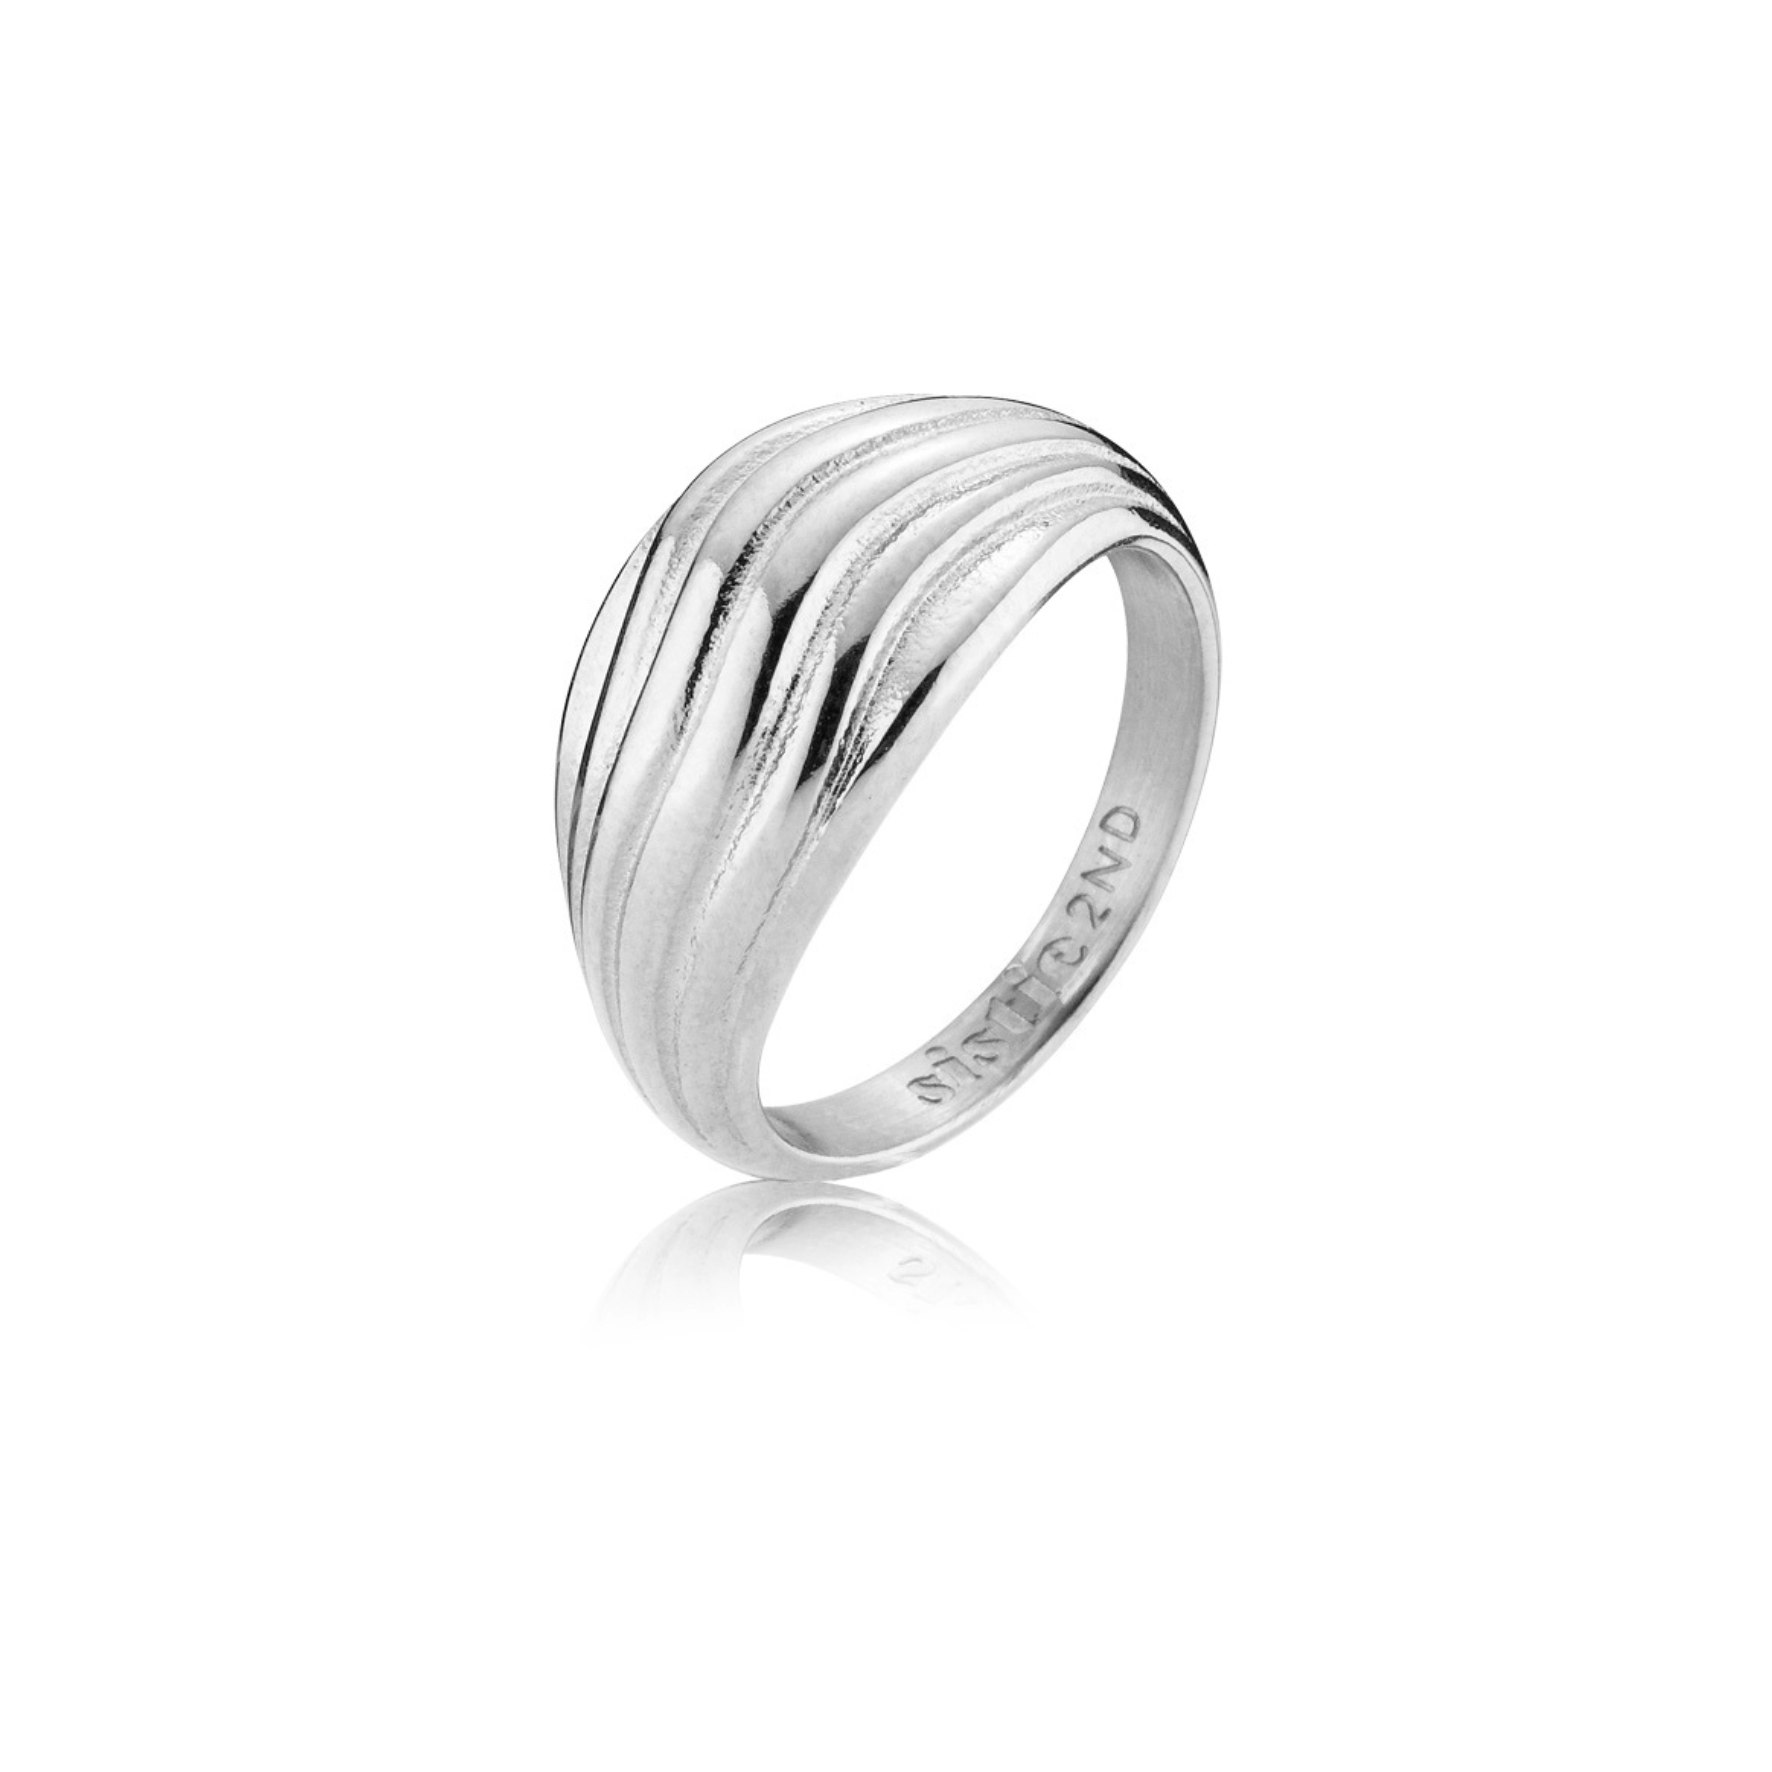 Moana Ring från Sistie 2nd i Rostfritt stål